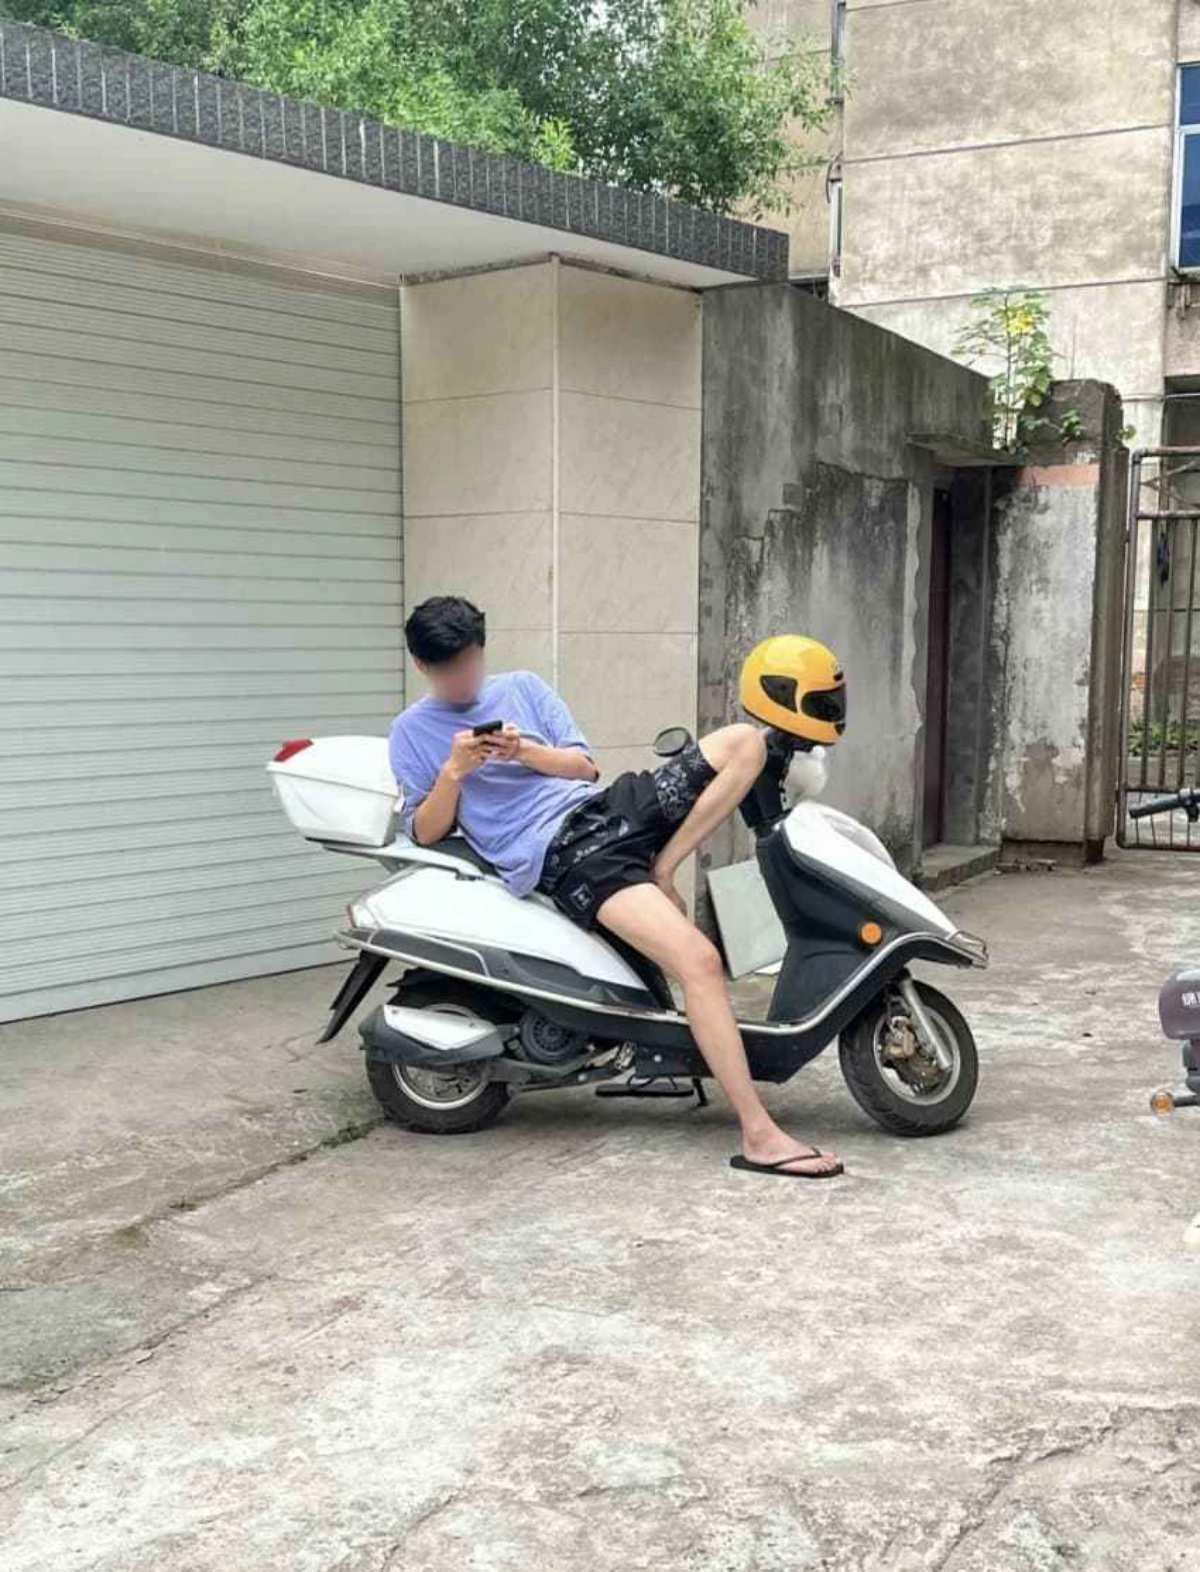 ‘오토바이에서 애정행각 하는 커플 사진’ 이라며 올라온 사진 화제